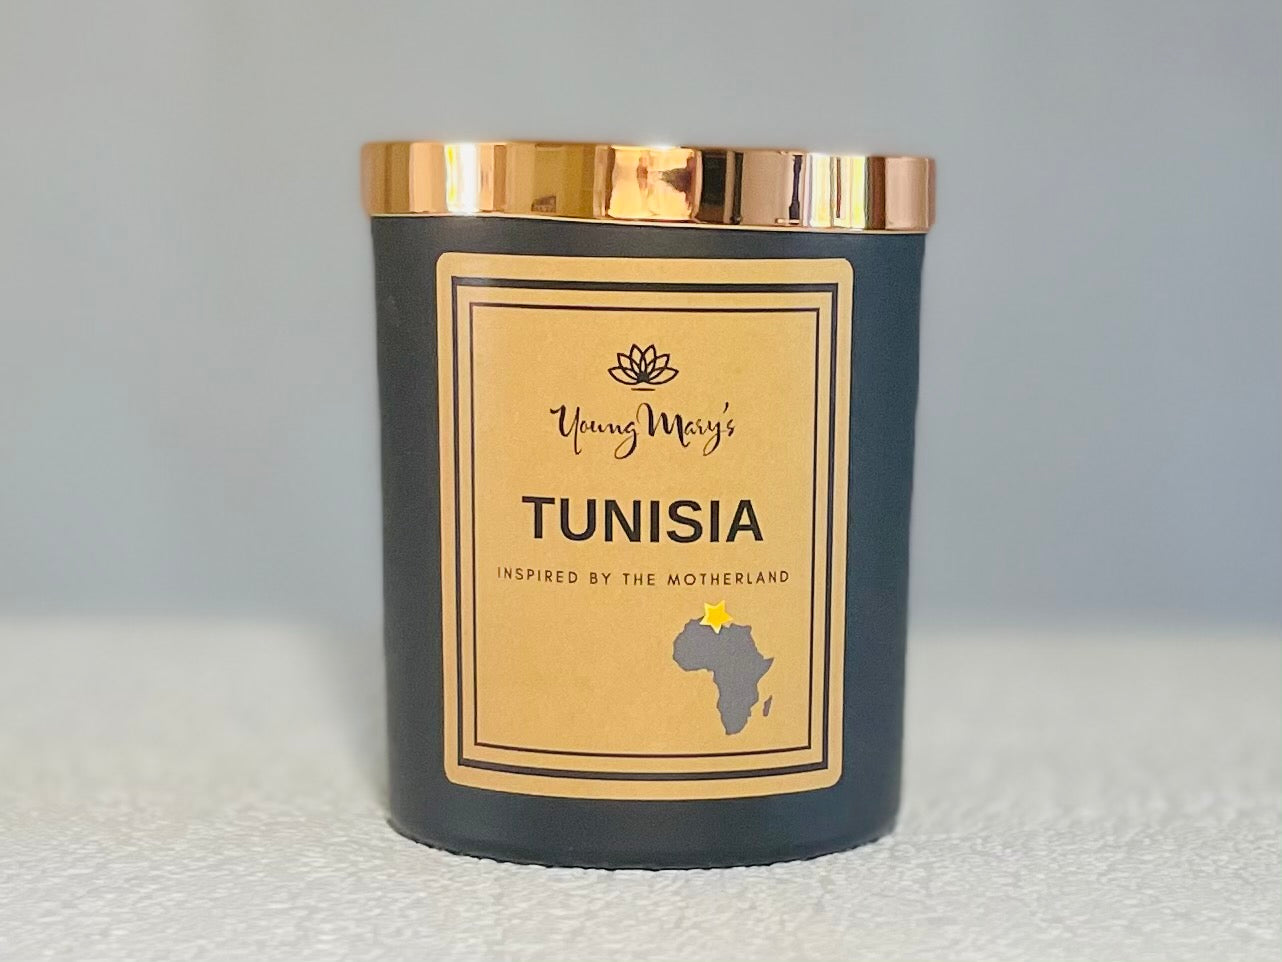 Tunisia - a zesty citrus burst (Spring African Wonder)